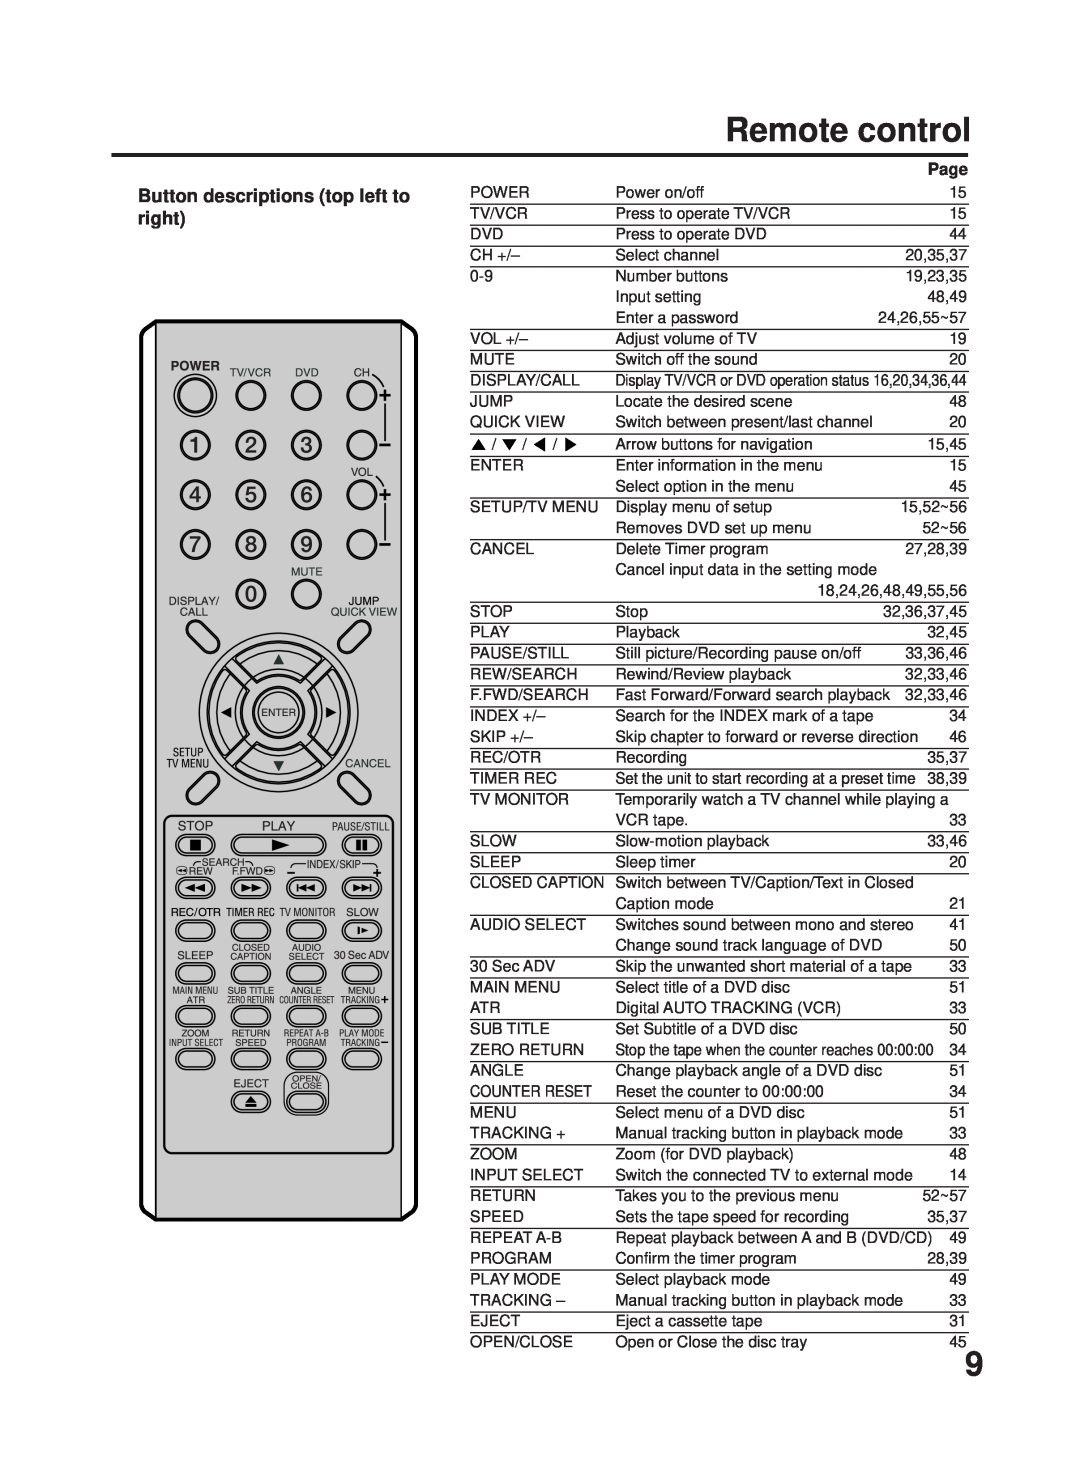 RCA 27F500TDV manual Remote control, Button descriptions top left to right, Page 